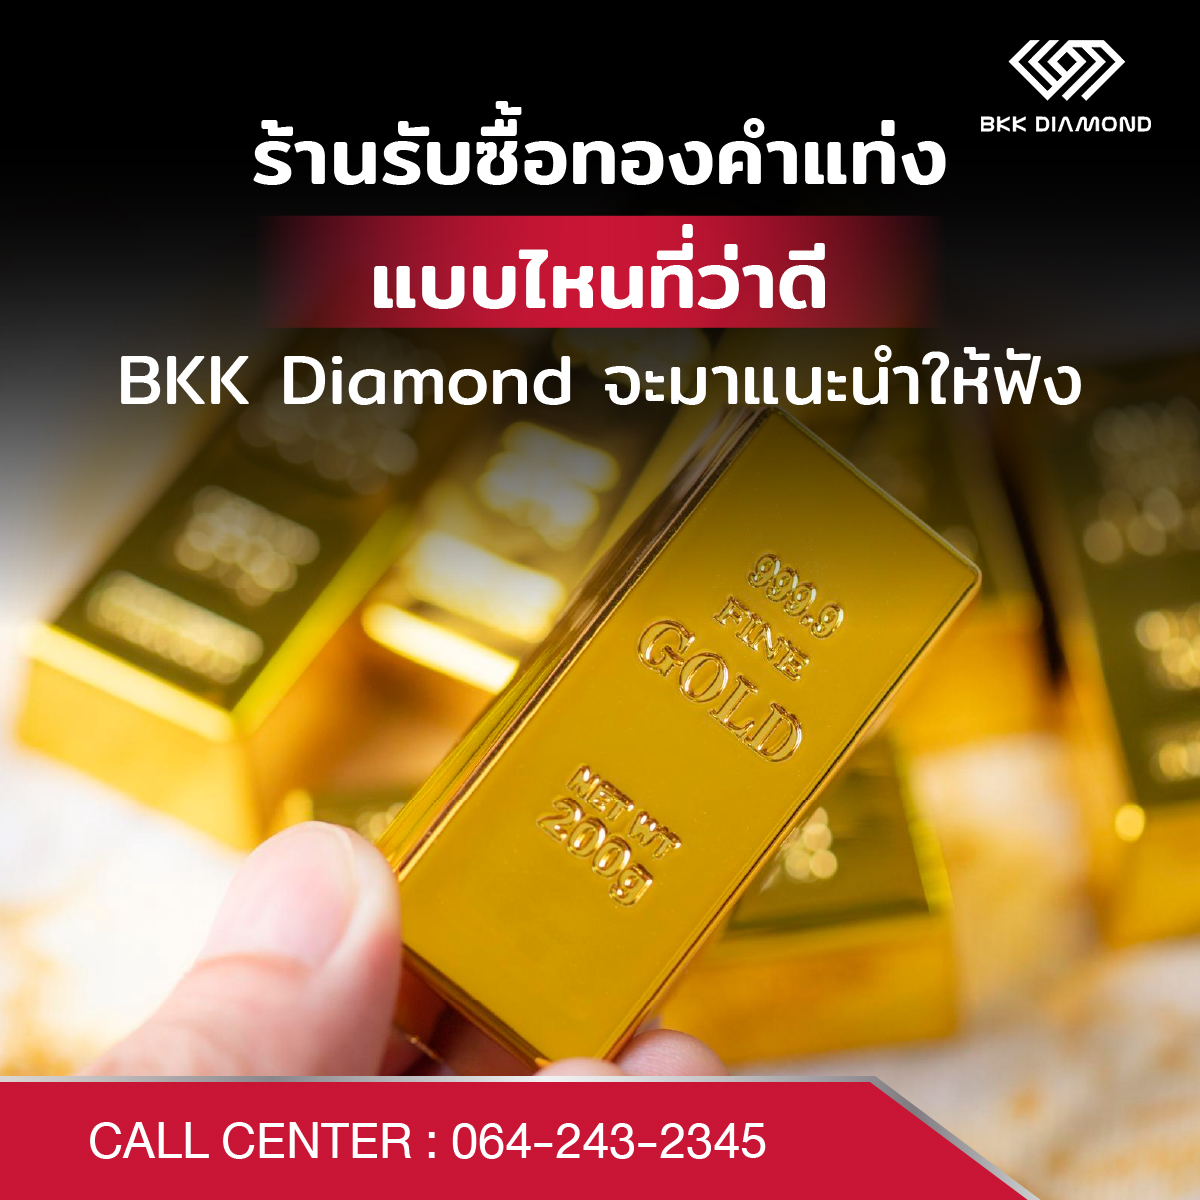 ร้านรับซื้อทองคำแท่งแบบไหนที่ว่าดี BKK Diamond จะมาแนะนำให้ฟัง